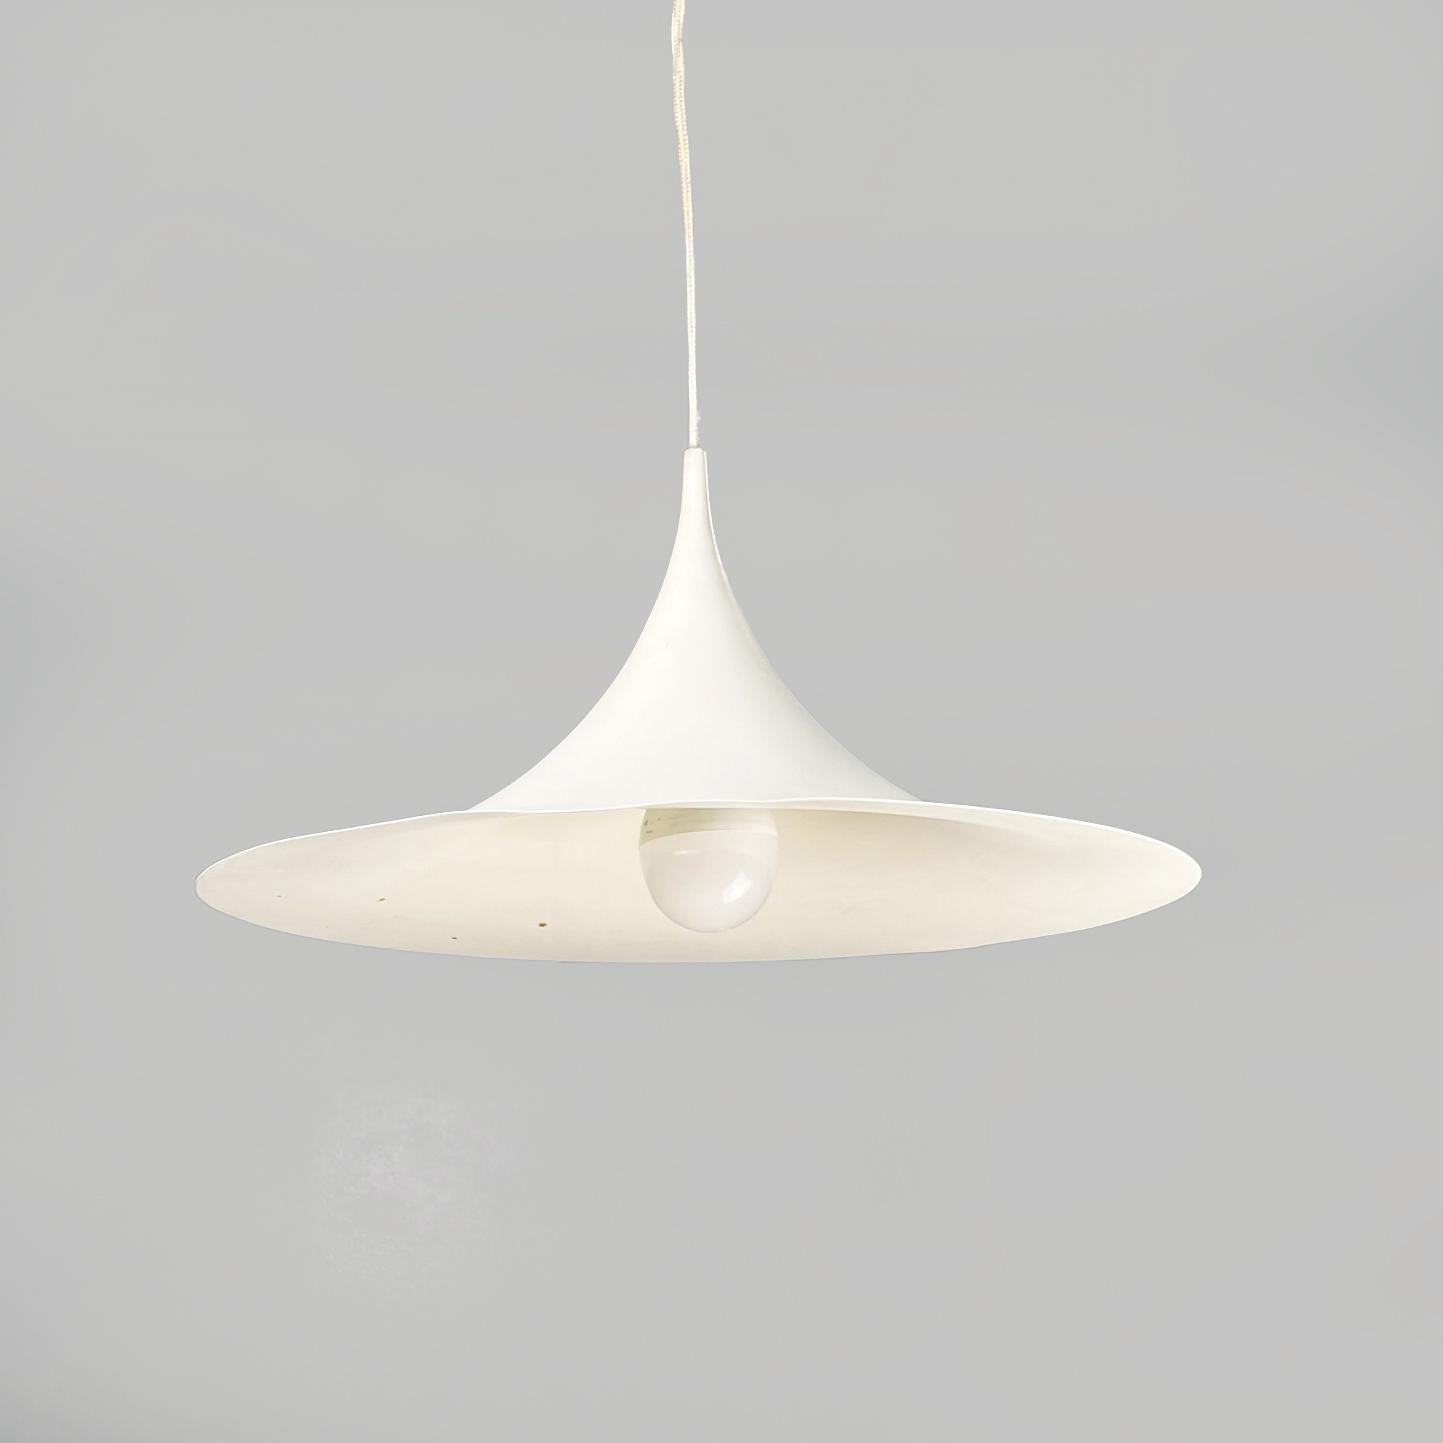 Mid-Century Modern Italian Modern Ceiling Lamp Semi by Bonderup & Thorup for Fog & Mørup, 1970s For Sale